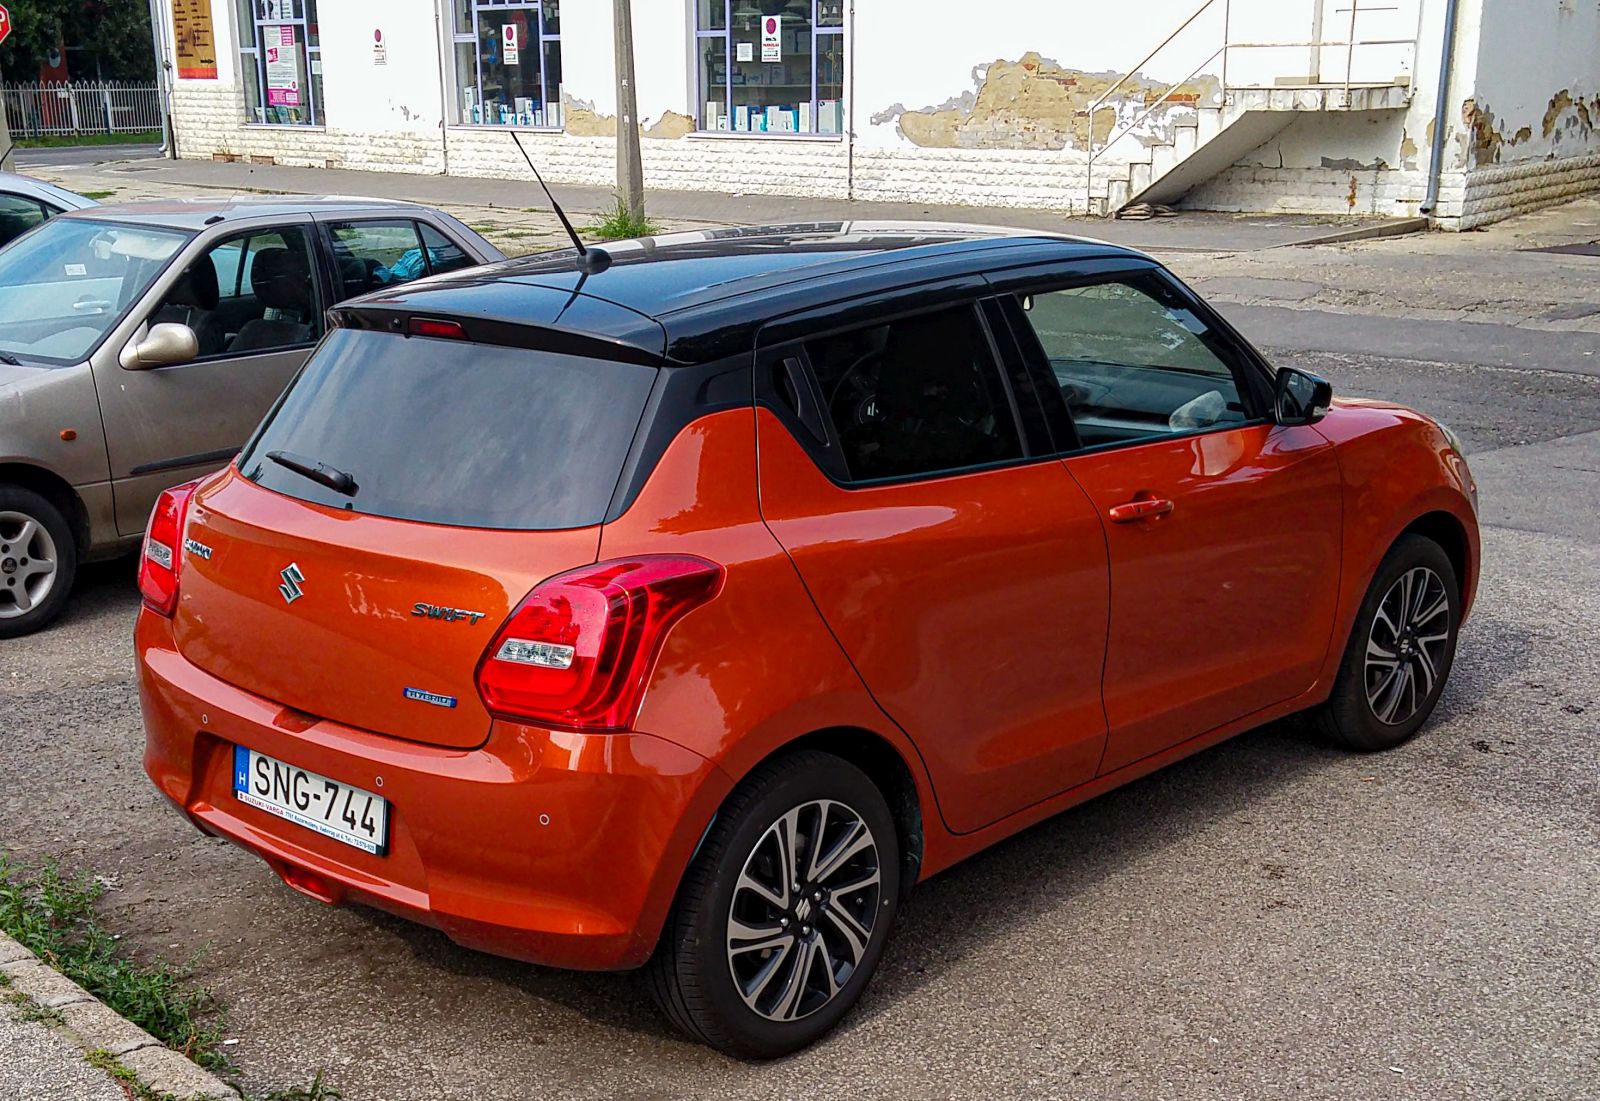 Rückansicht: Suzuki Swift Mk5 in Flame Orange (Lucent Orange heißt auch die Farbe). Foto: 07.2021.